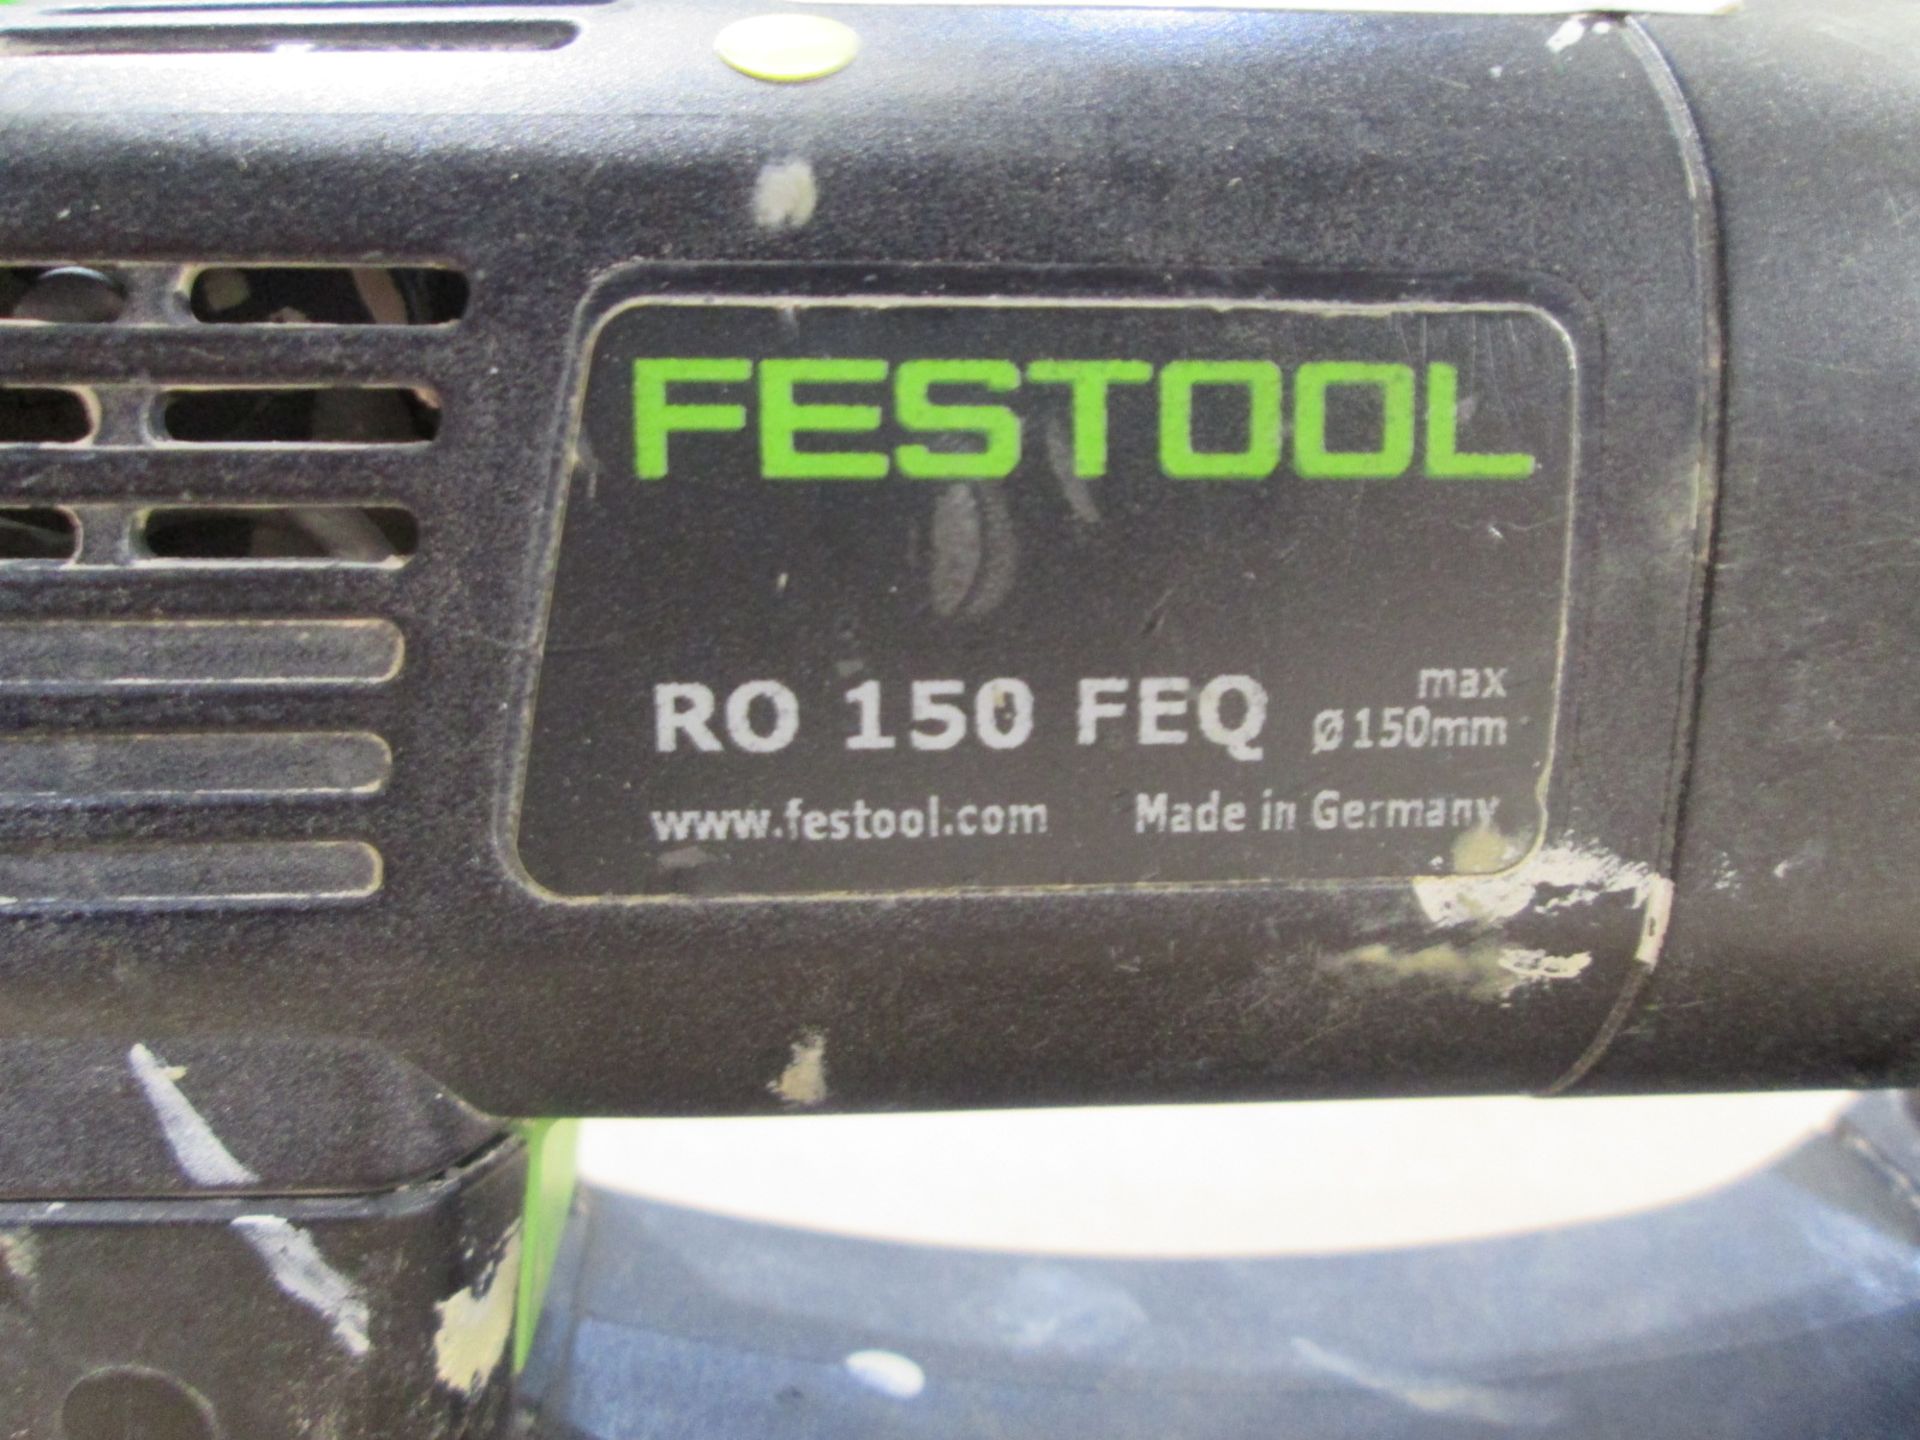 Festool RO 150 FEQ-Plus Geared Eccentric Sander, 240V - Image 3 of 6